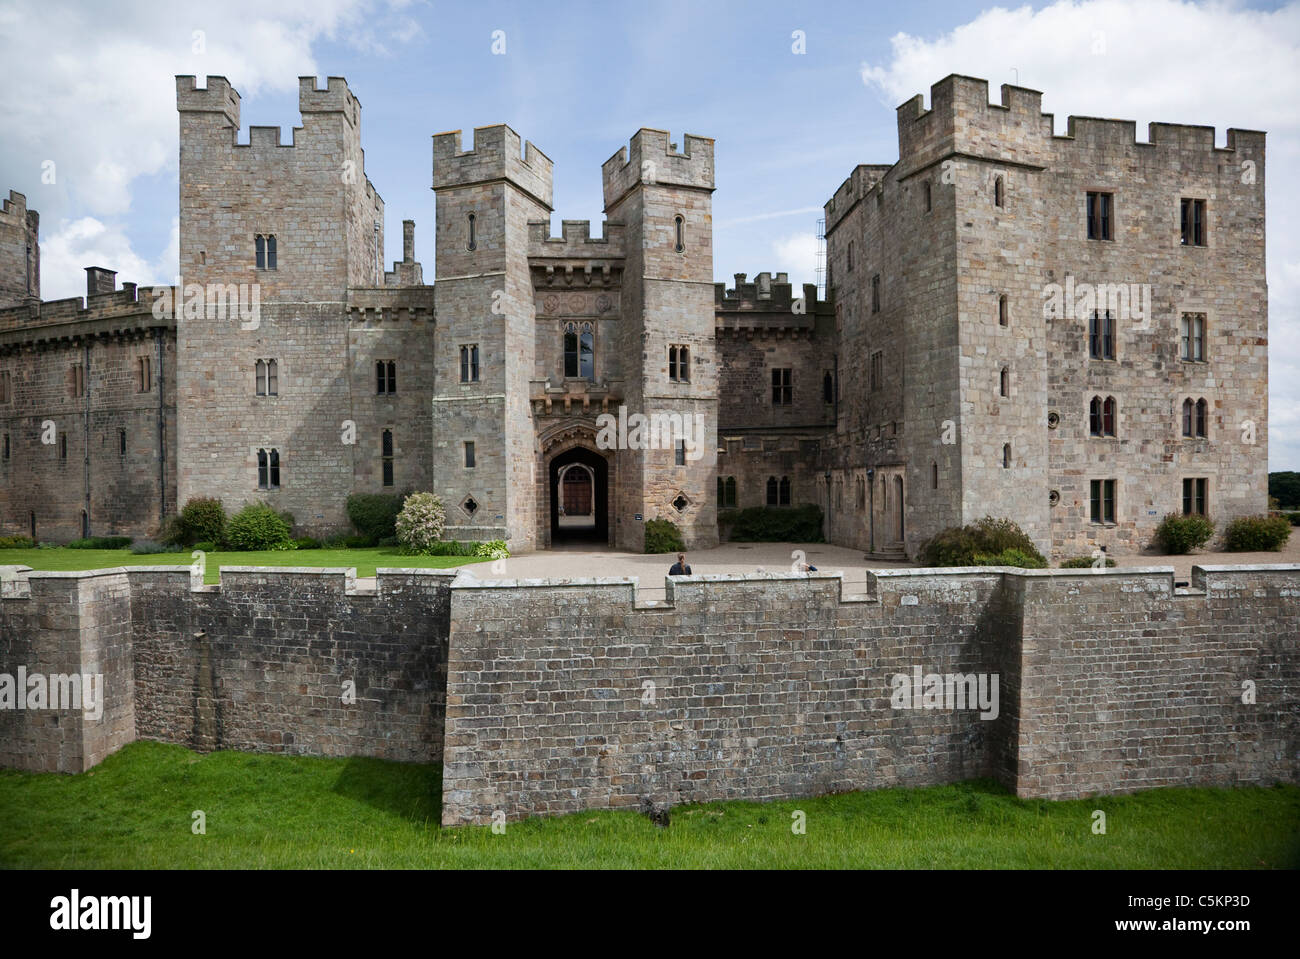 Raby Castle près de Barnard Castle, County Durham, England, UK. Banque D'Images